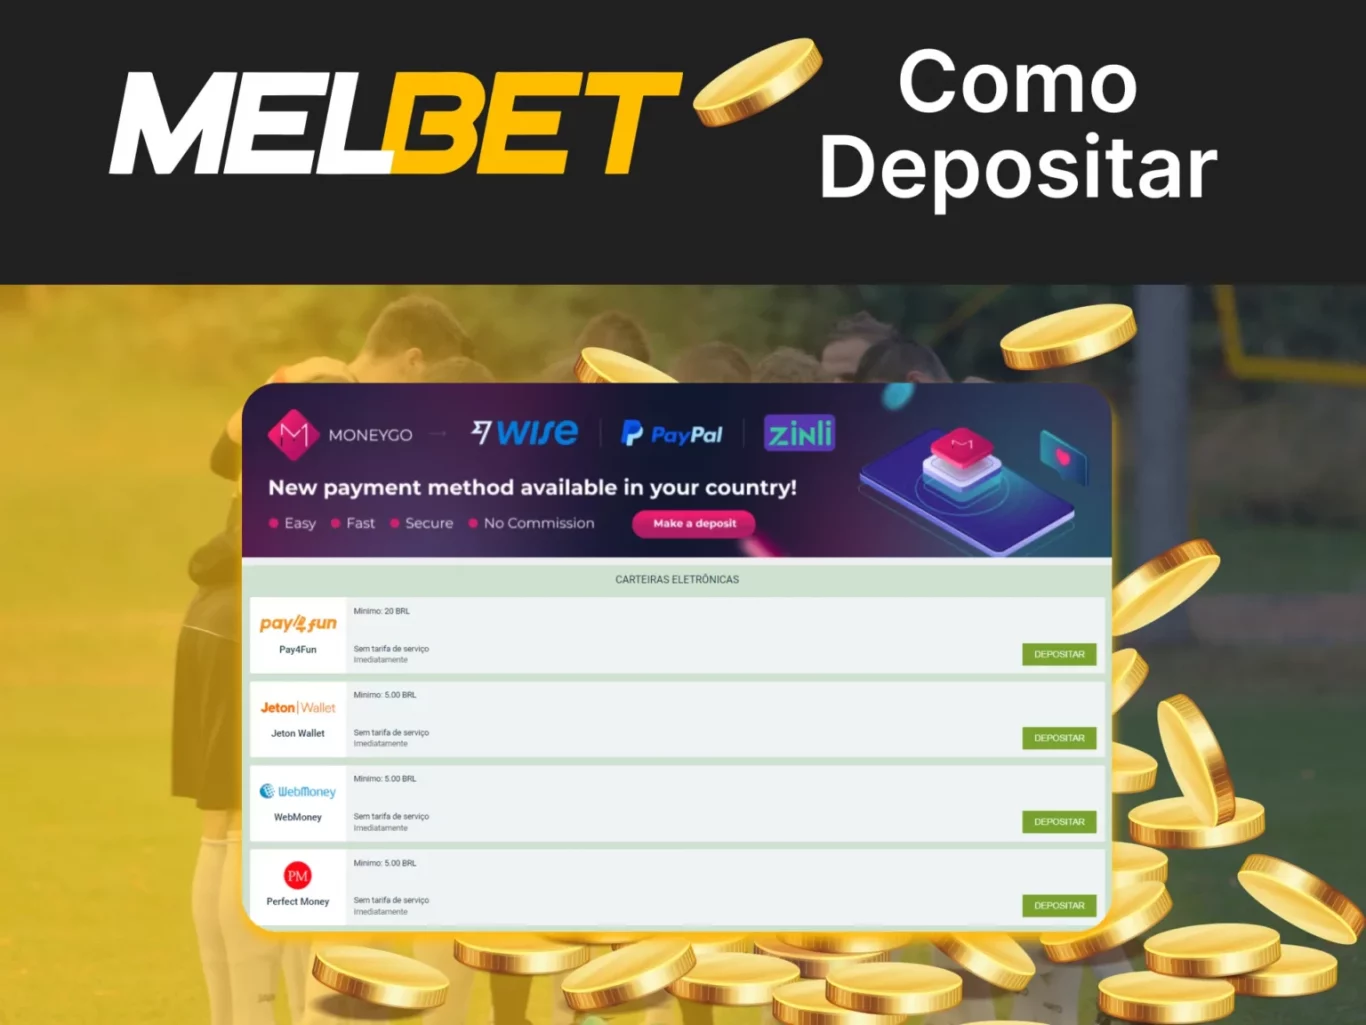 Ganhe dinheiro com Melbet código promocional sem depósito